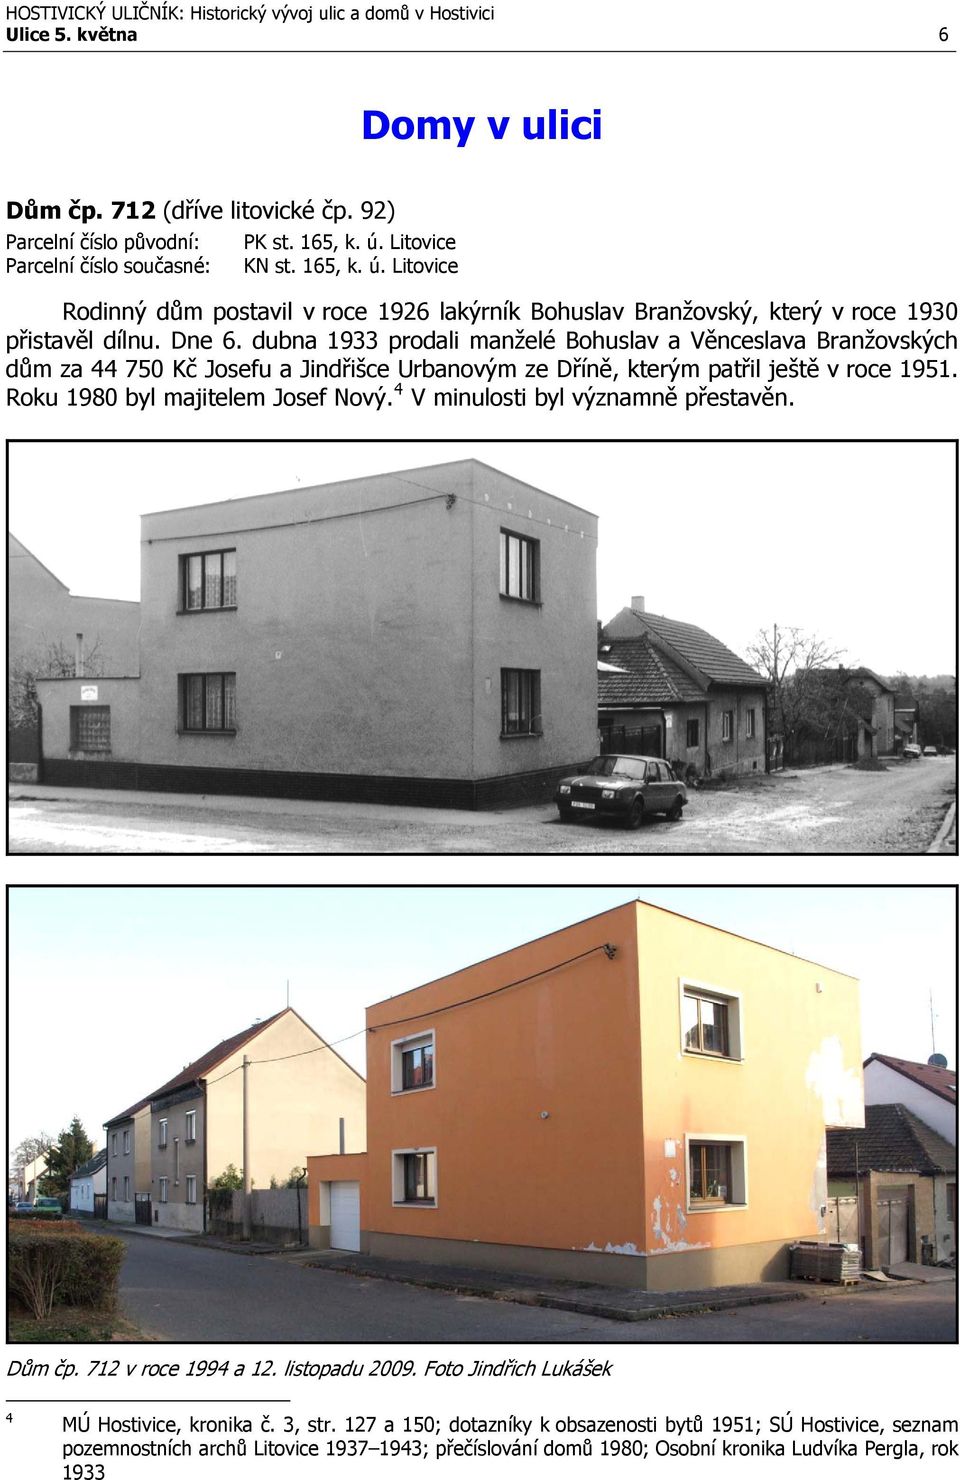 dubna 1933 prodali manželé Bohuslav a Věnceslava Branžovských dům za 44 750 Kč Josefu a Jindřišce Urbanovým ze Dříně, kterým patřil ještě v roce 1951. Roku 1980 byl majitelem Josef Nový.